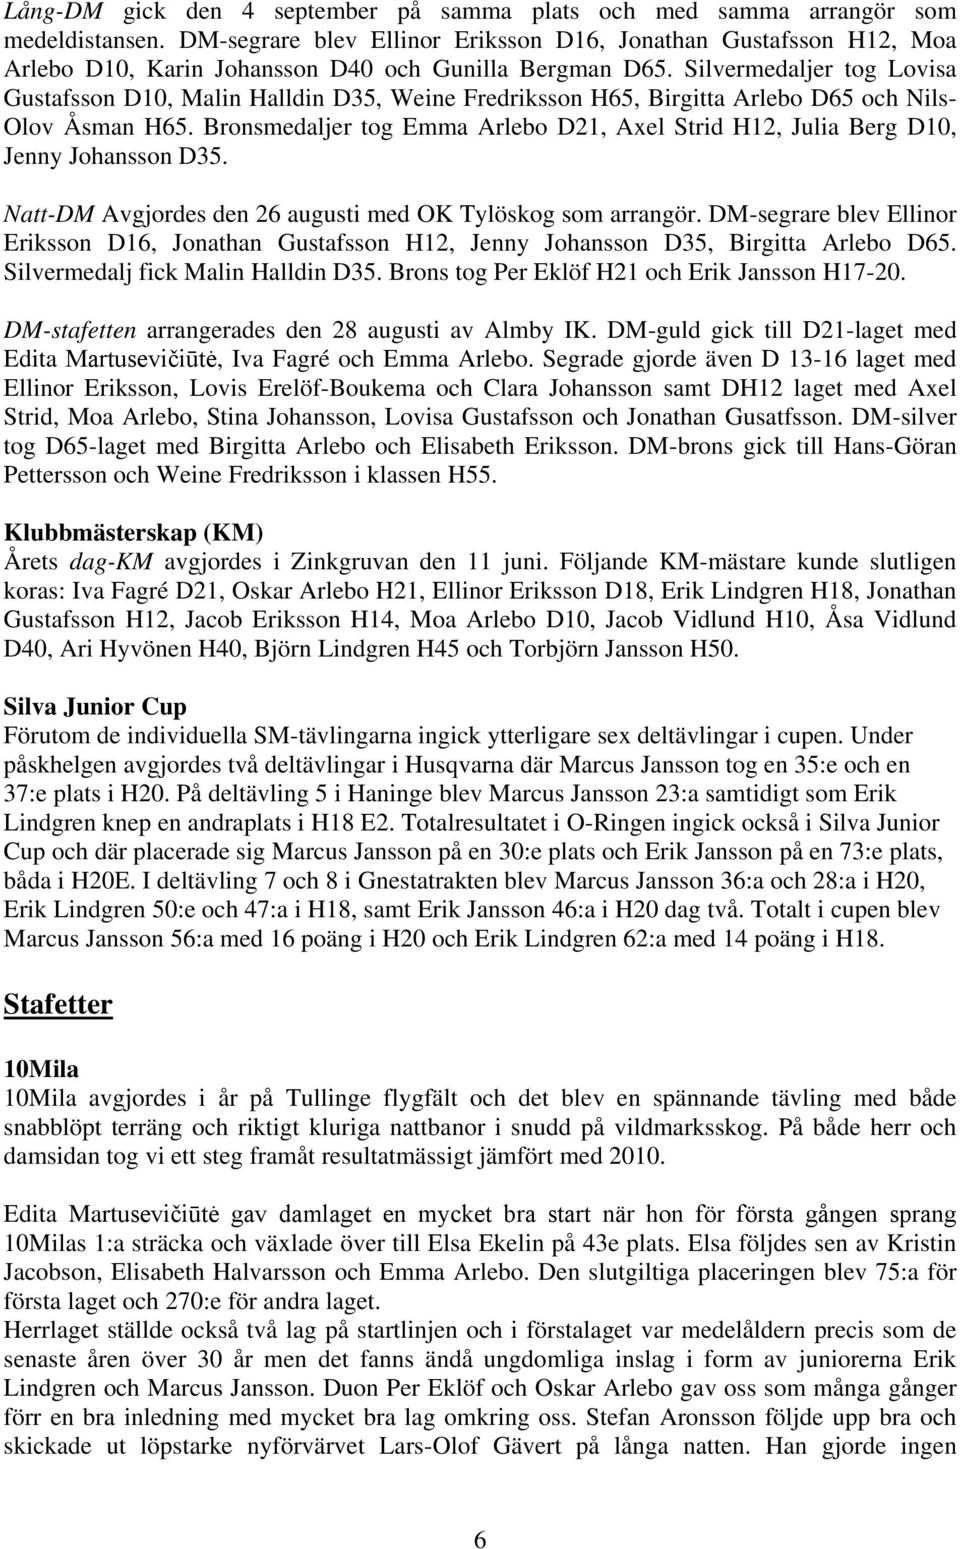 Silvermedaljer tog Lovisa Gustafsson D10, Malin Halldin D35, Weine Fredriksson H65, Birgitta Arlebo D65 och Nils- Olov Åsman H65.